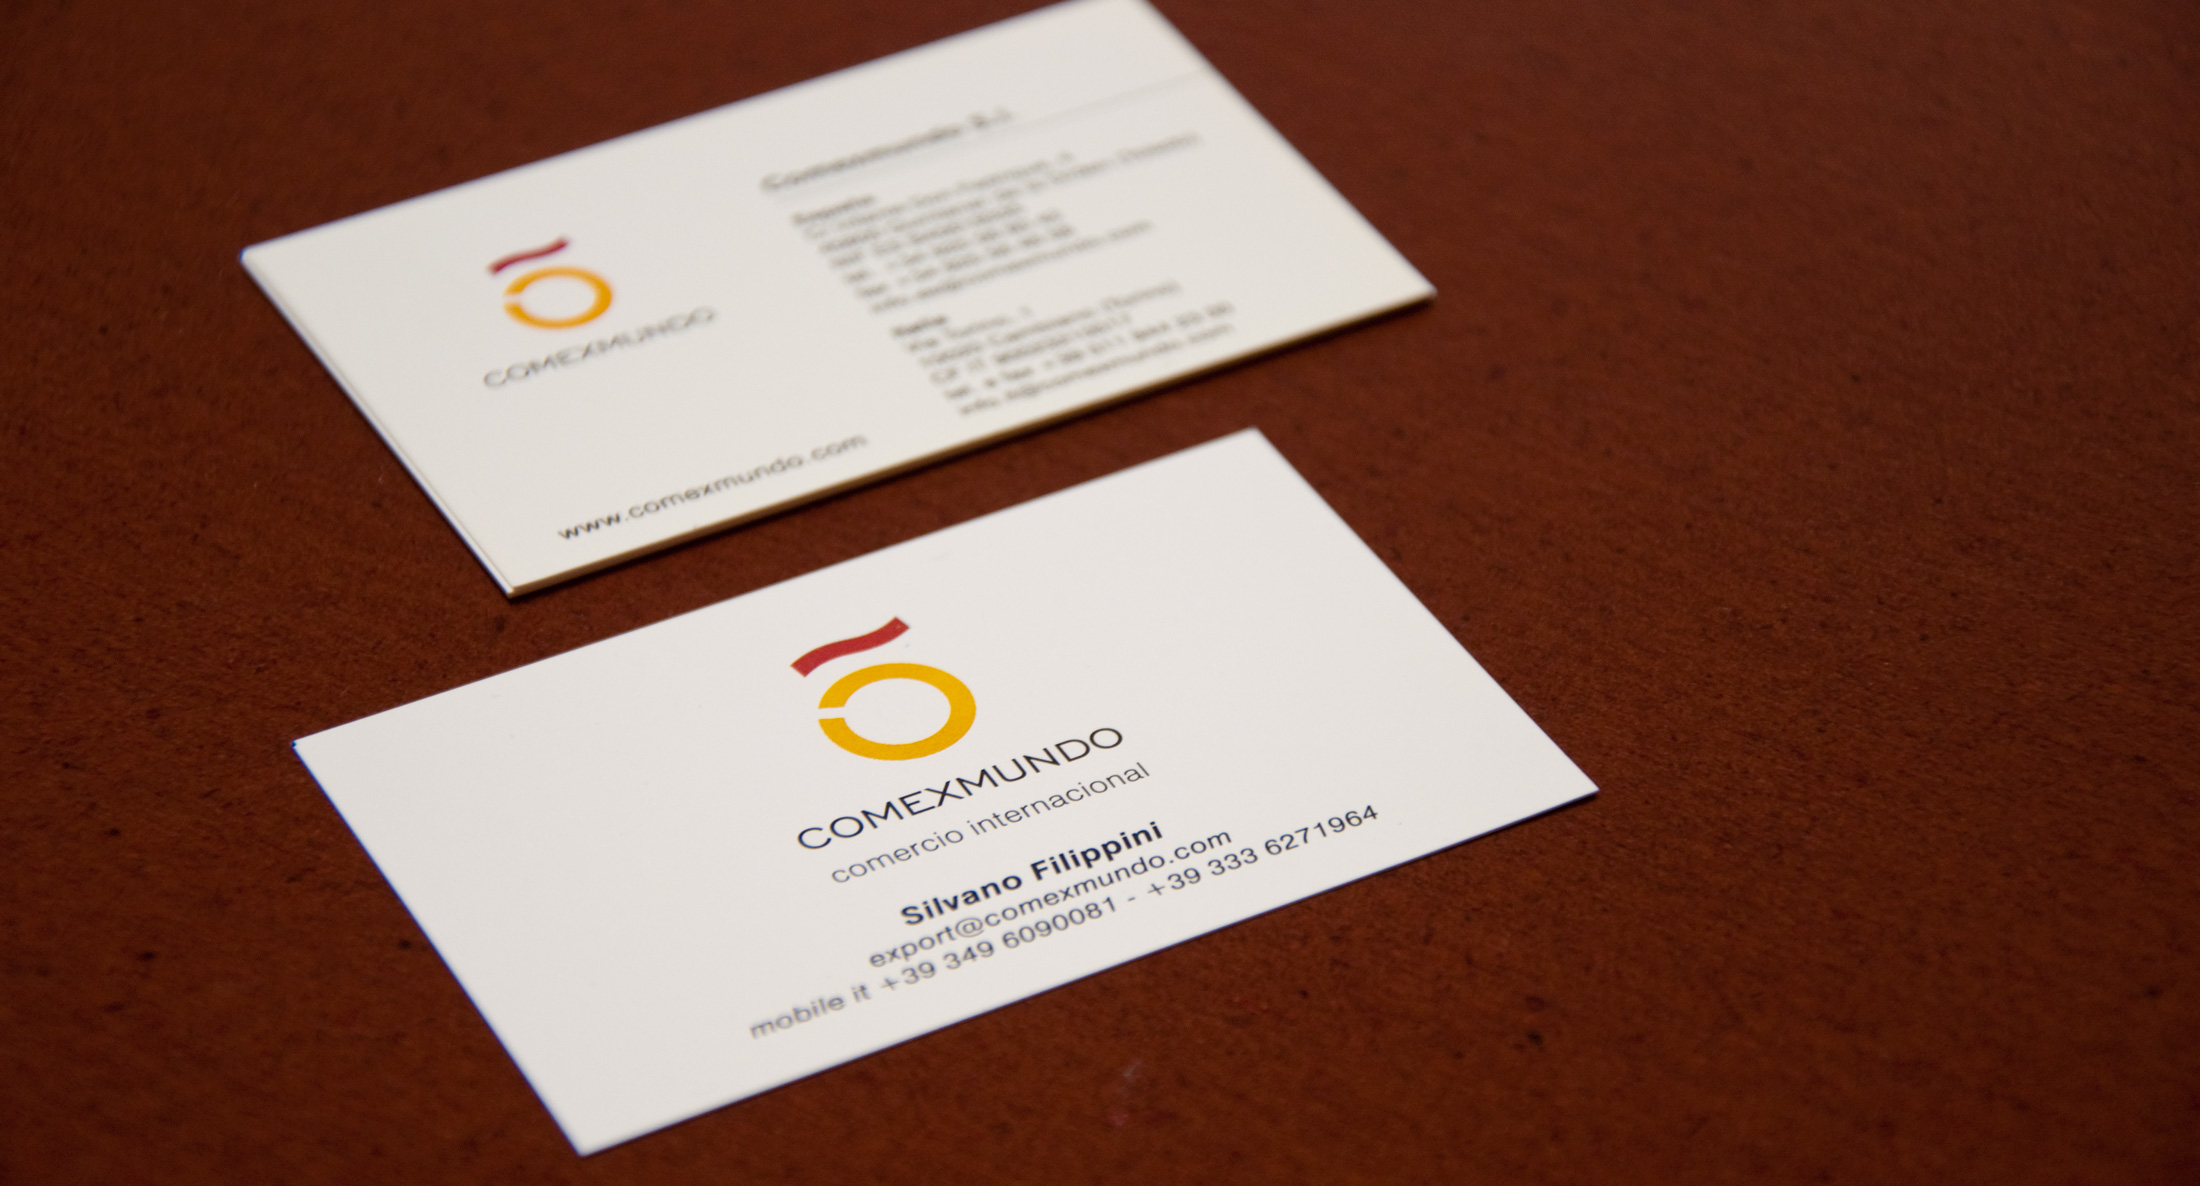 Comexmundo business card